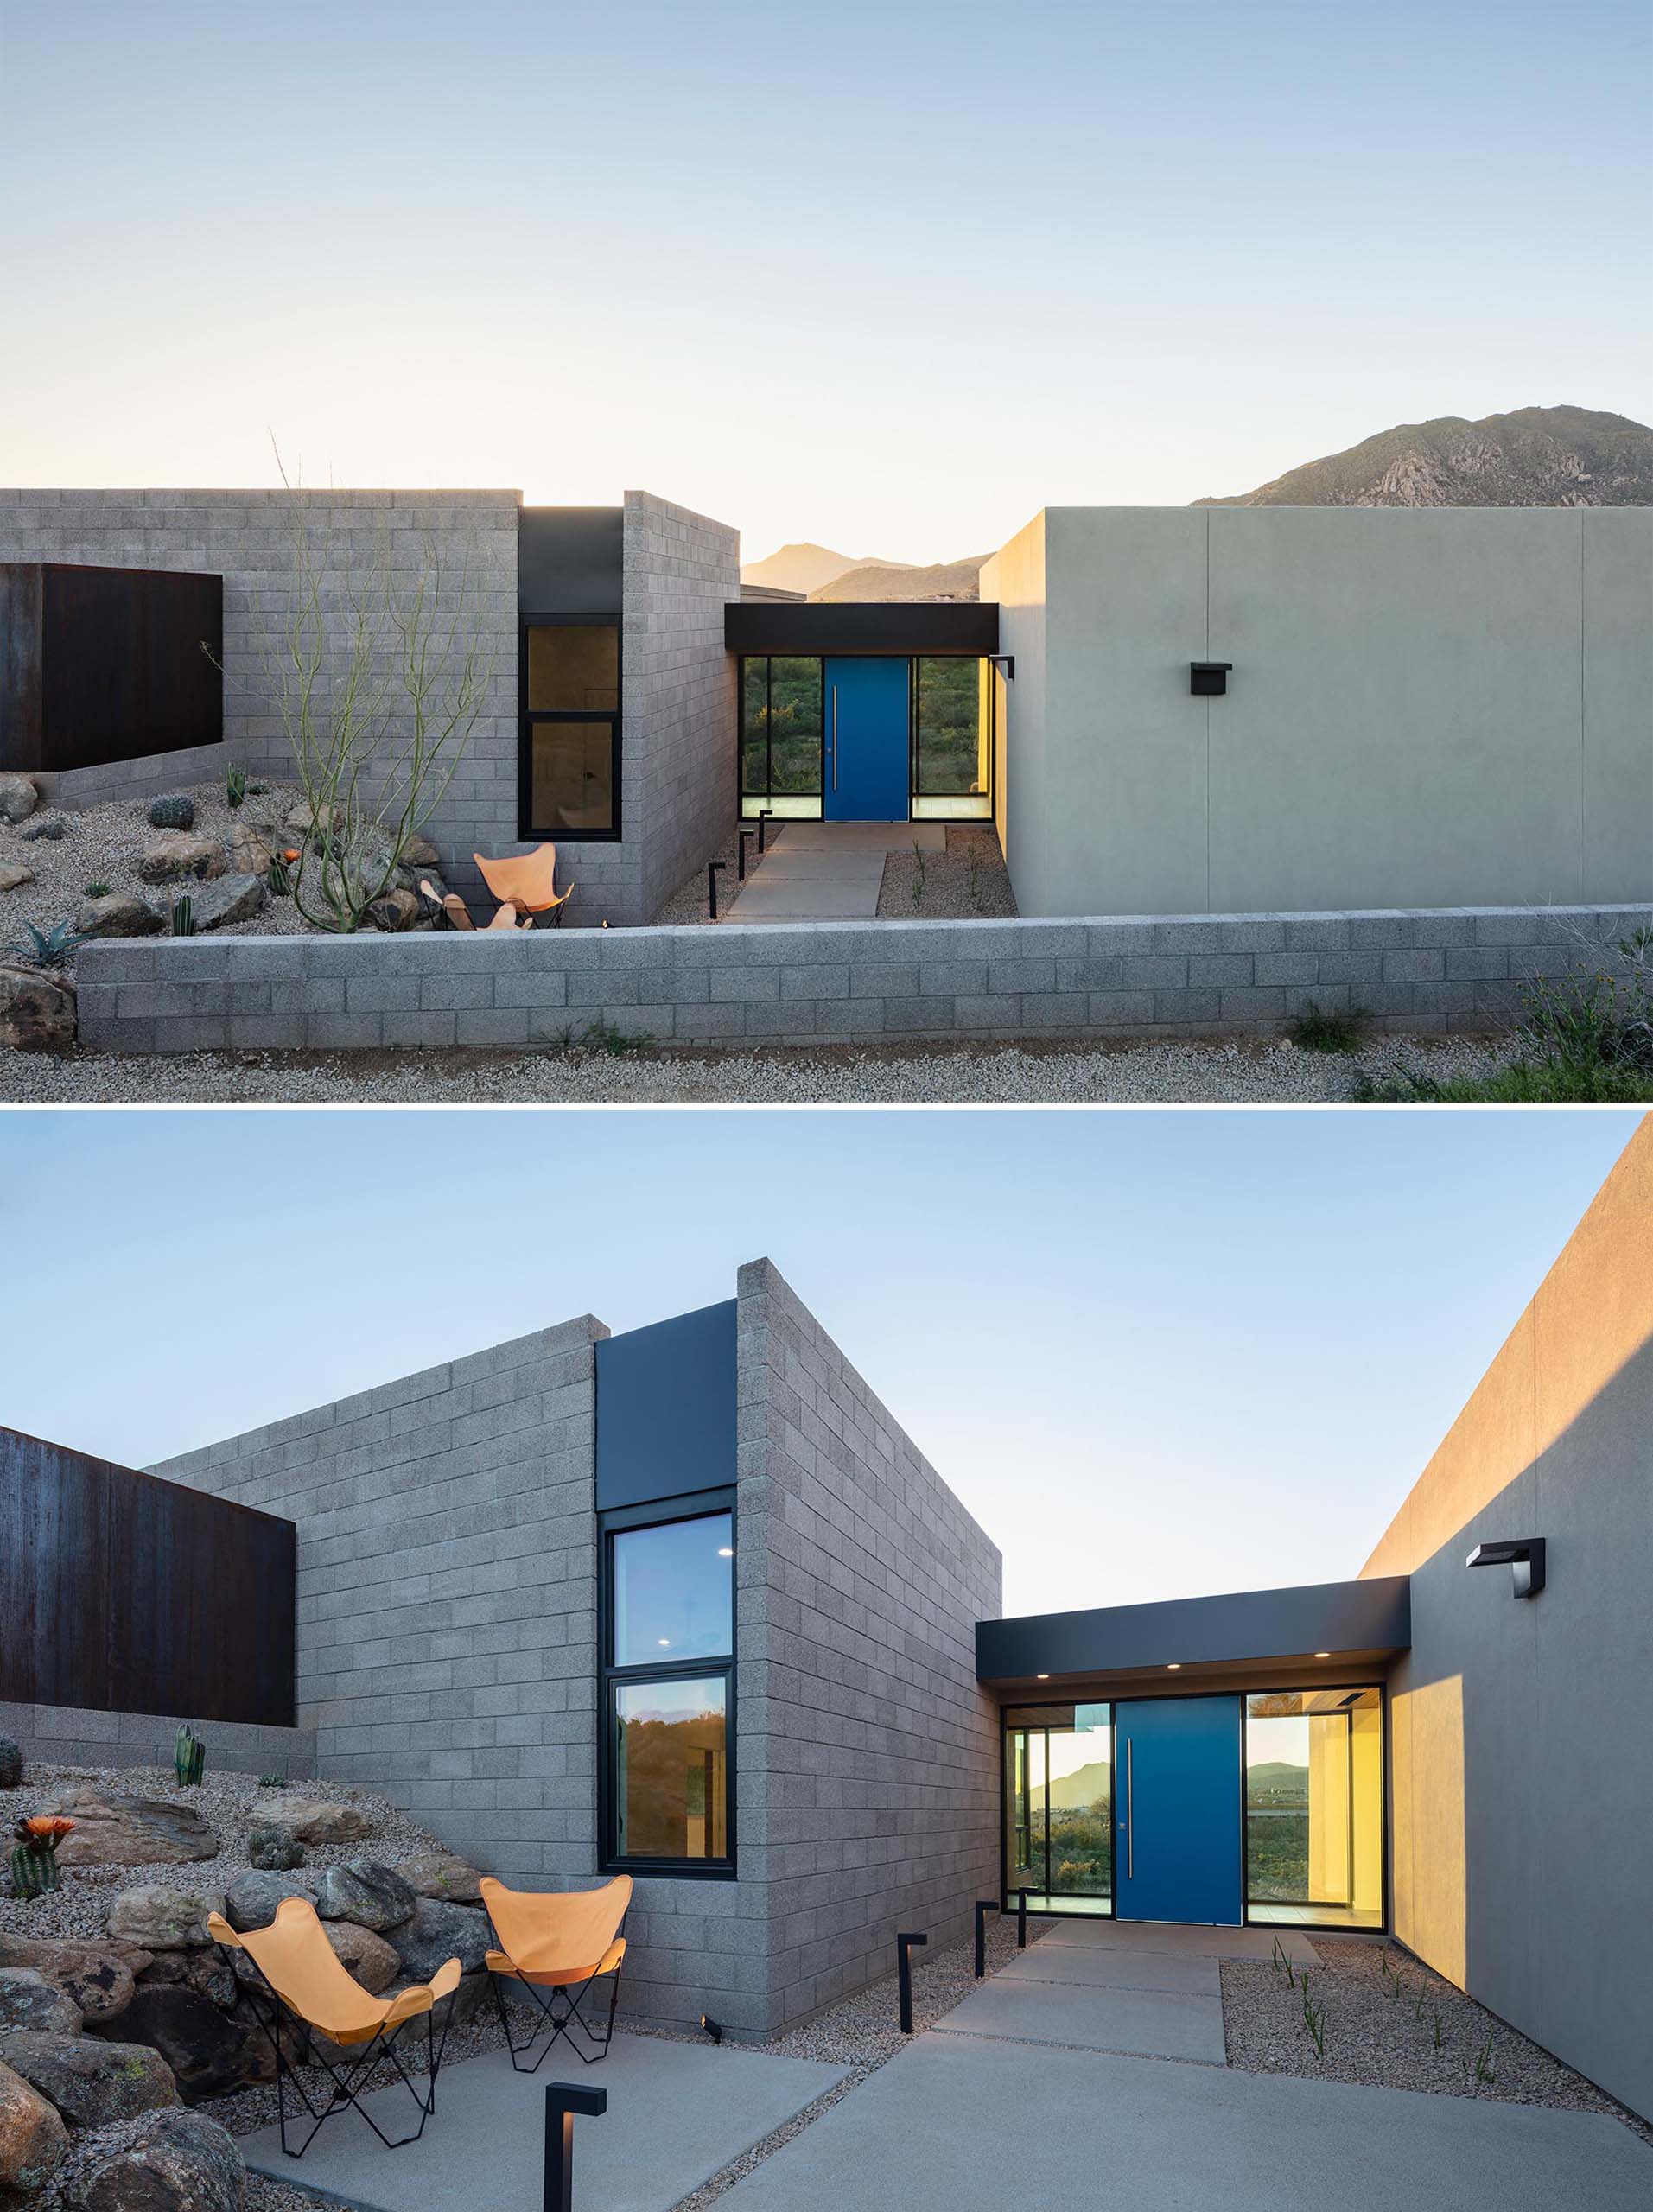 Вход в этот современный дом в пустыне, который выделяется ярко-синей вращающейся входной дверью, соединяет фойе, вход в гараж и доступ в гостевую зону через стеклянный «мост».